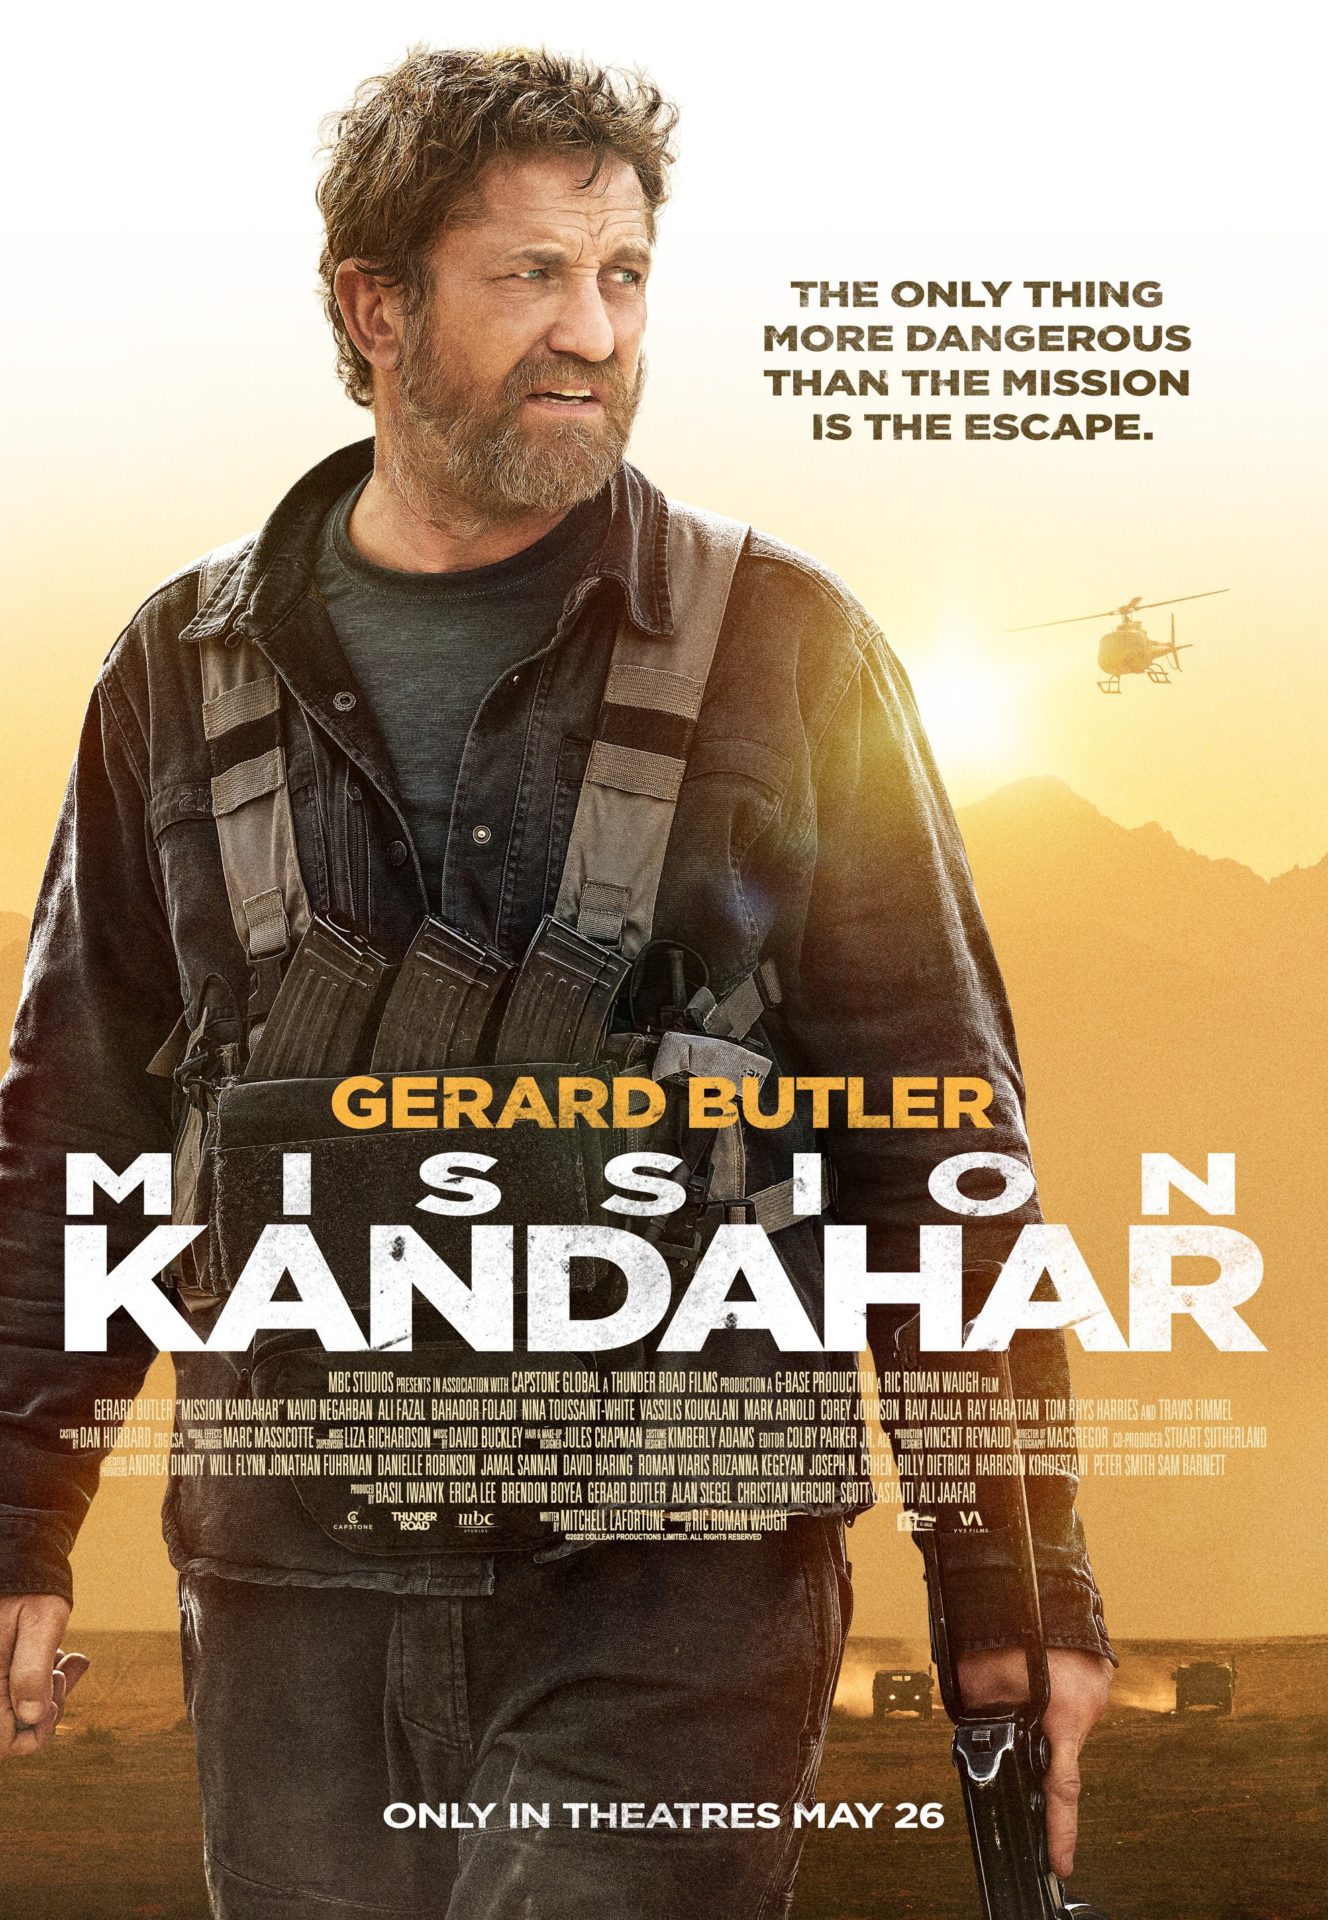 movie review of kandahar